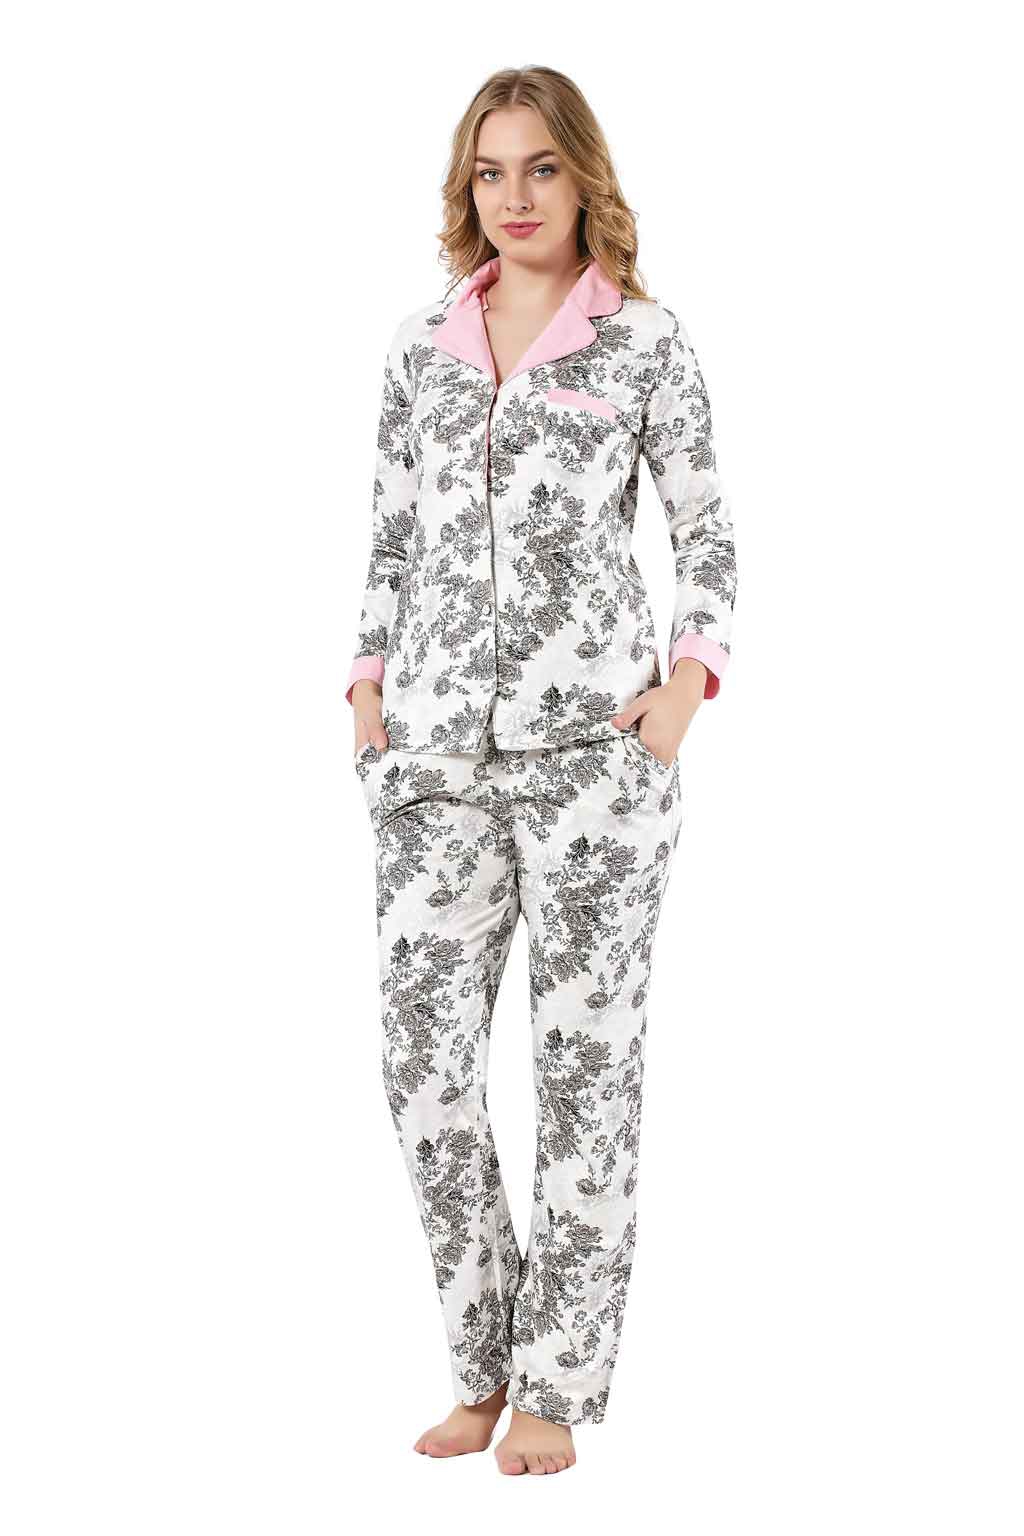 2389UK Model Boydan Düğmeli Bayan Pijama Takımı